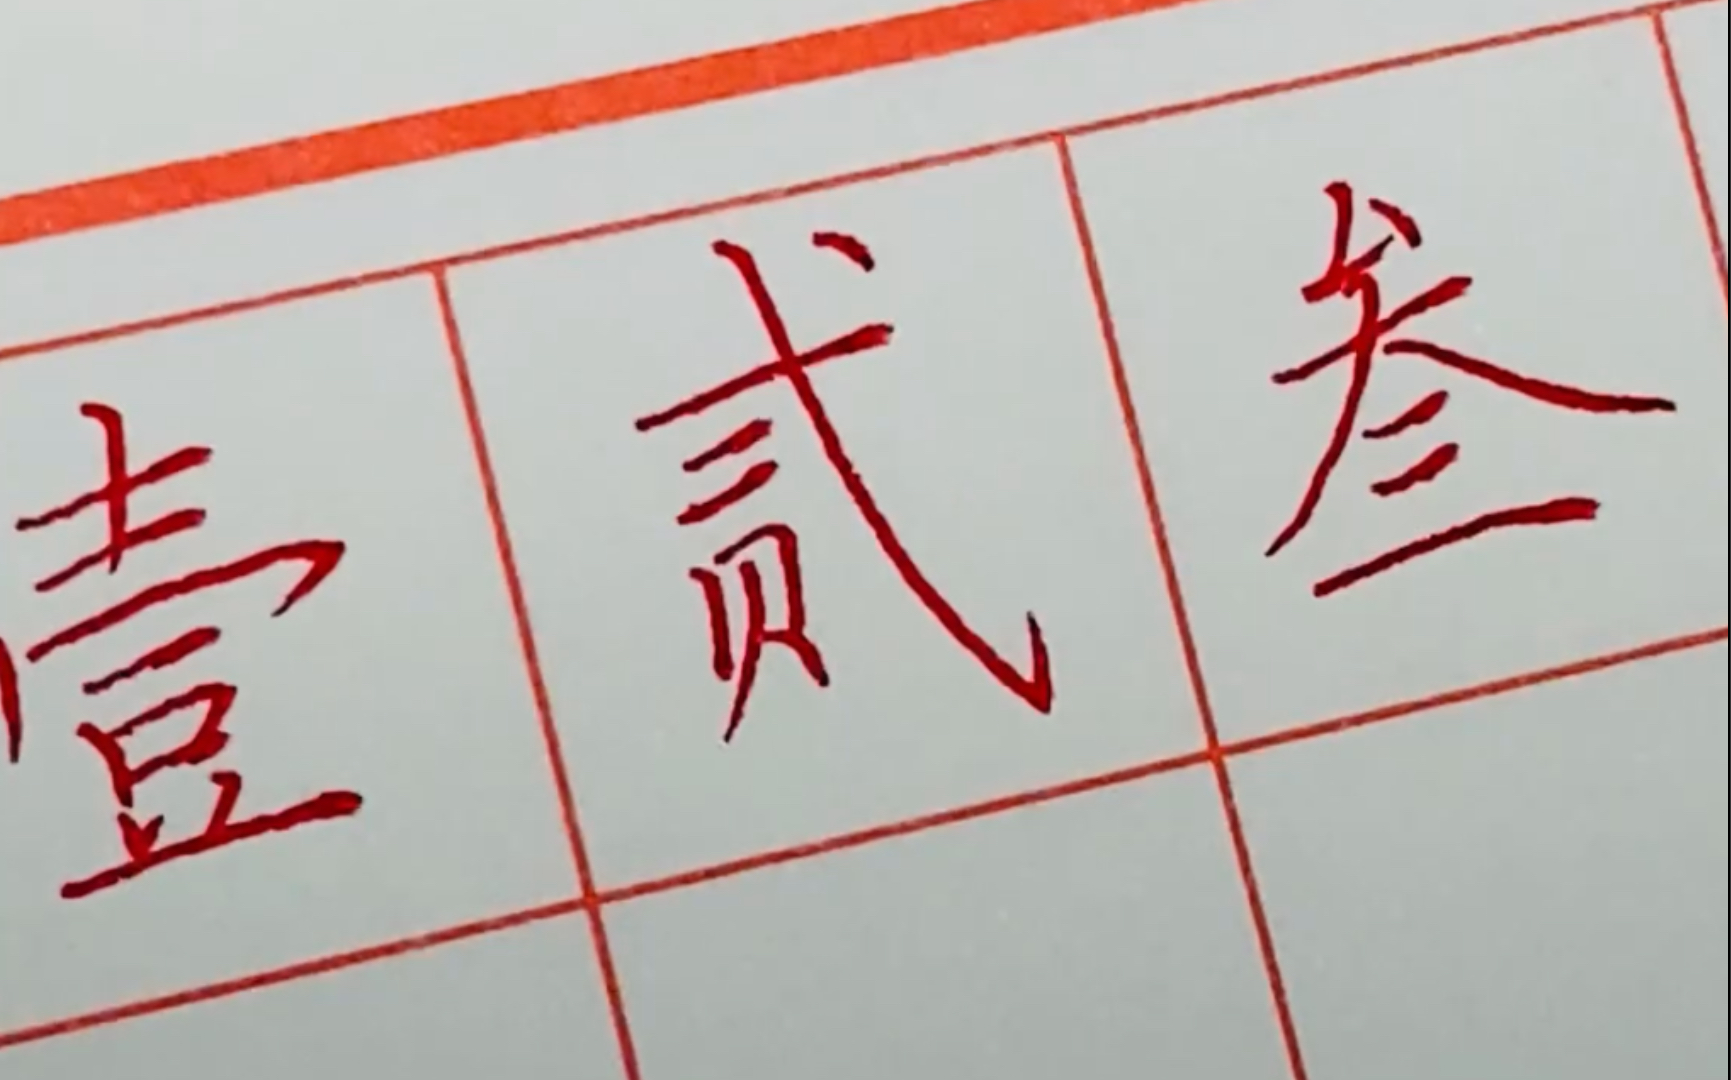 【手写】中文大写数字记不住?